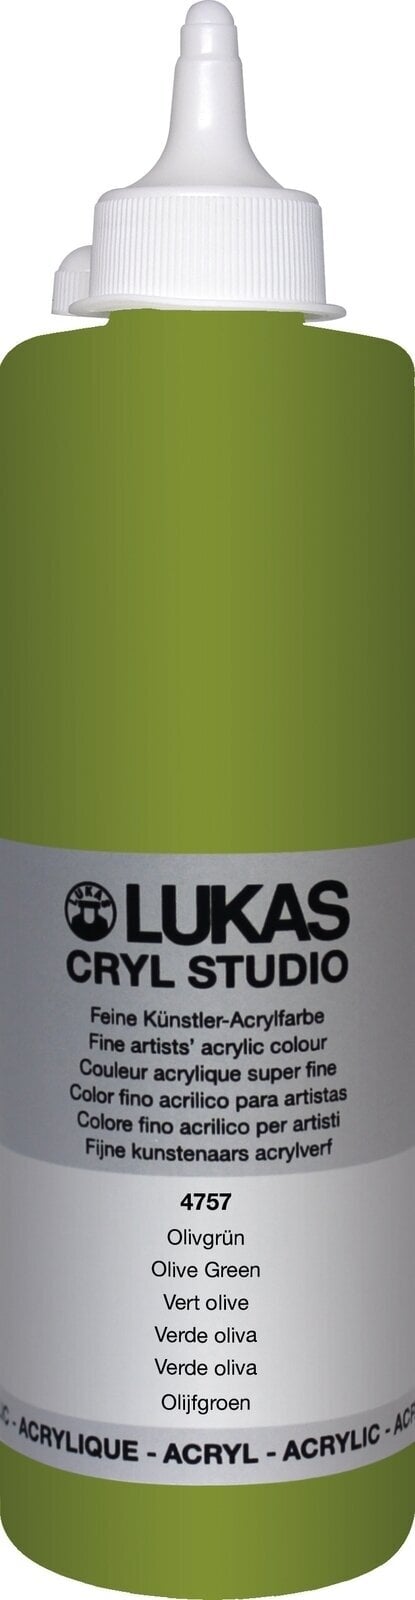 Tinta acrílica Lukas Cryl Studio Tinta acrílica 500 ml Olive Green